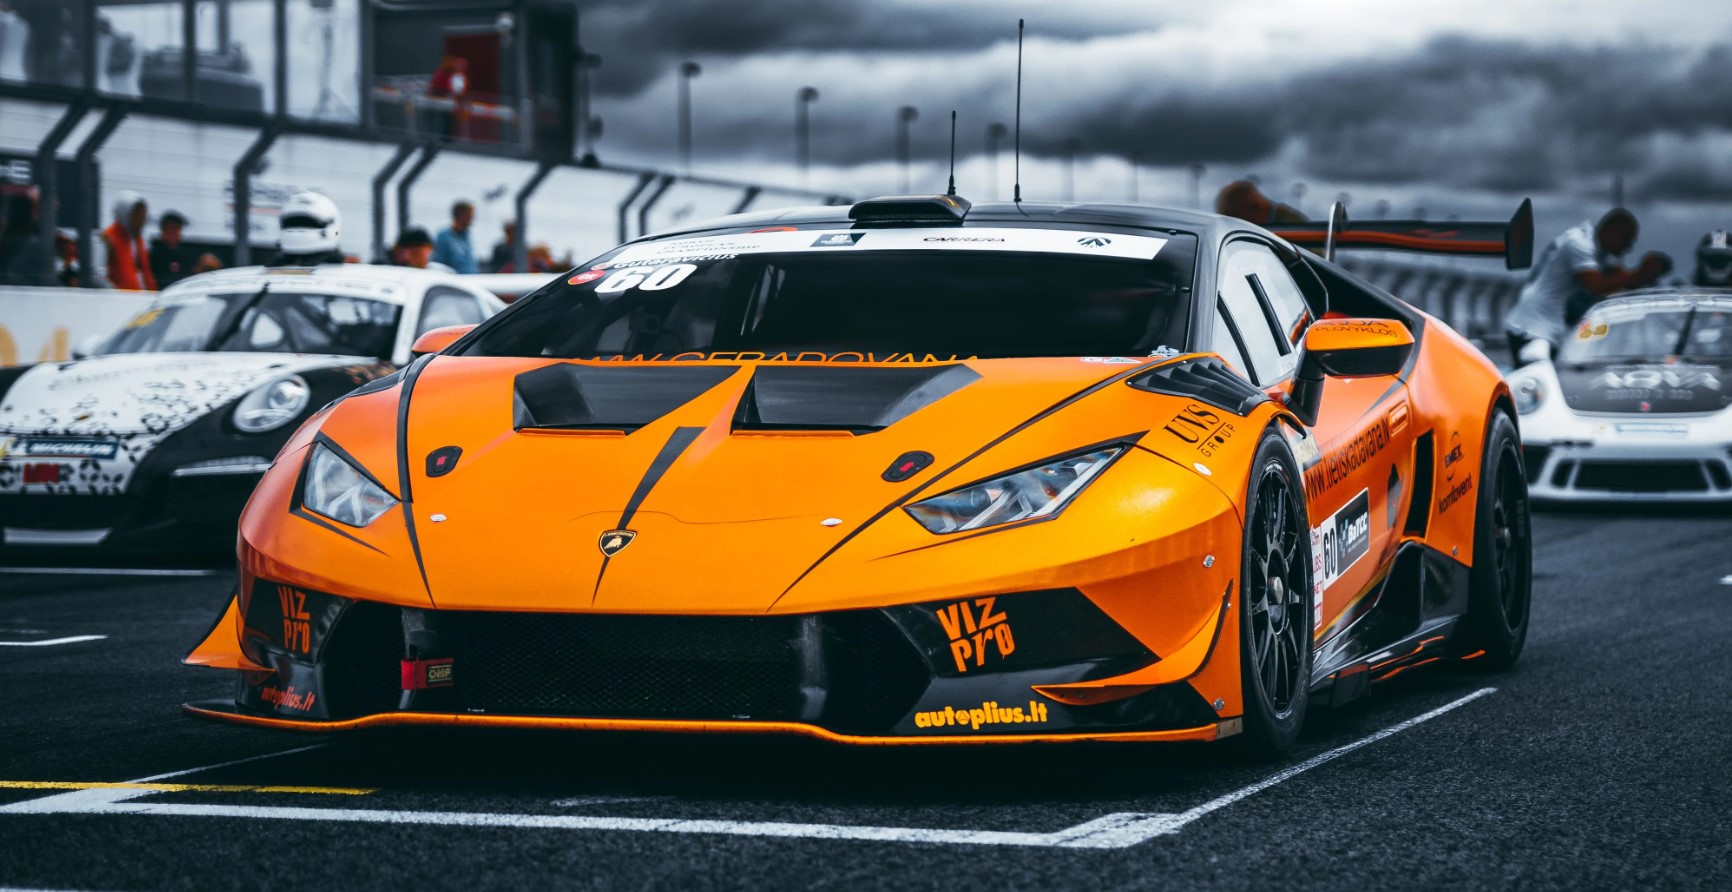 Lamborghini_Automobili_Squadra_Corse_motorsport_sold_by_Technomobi